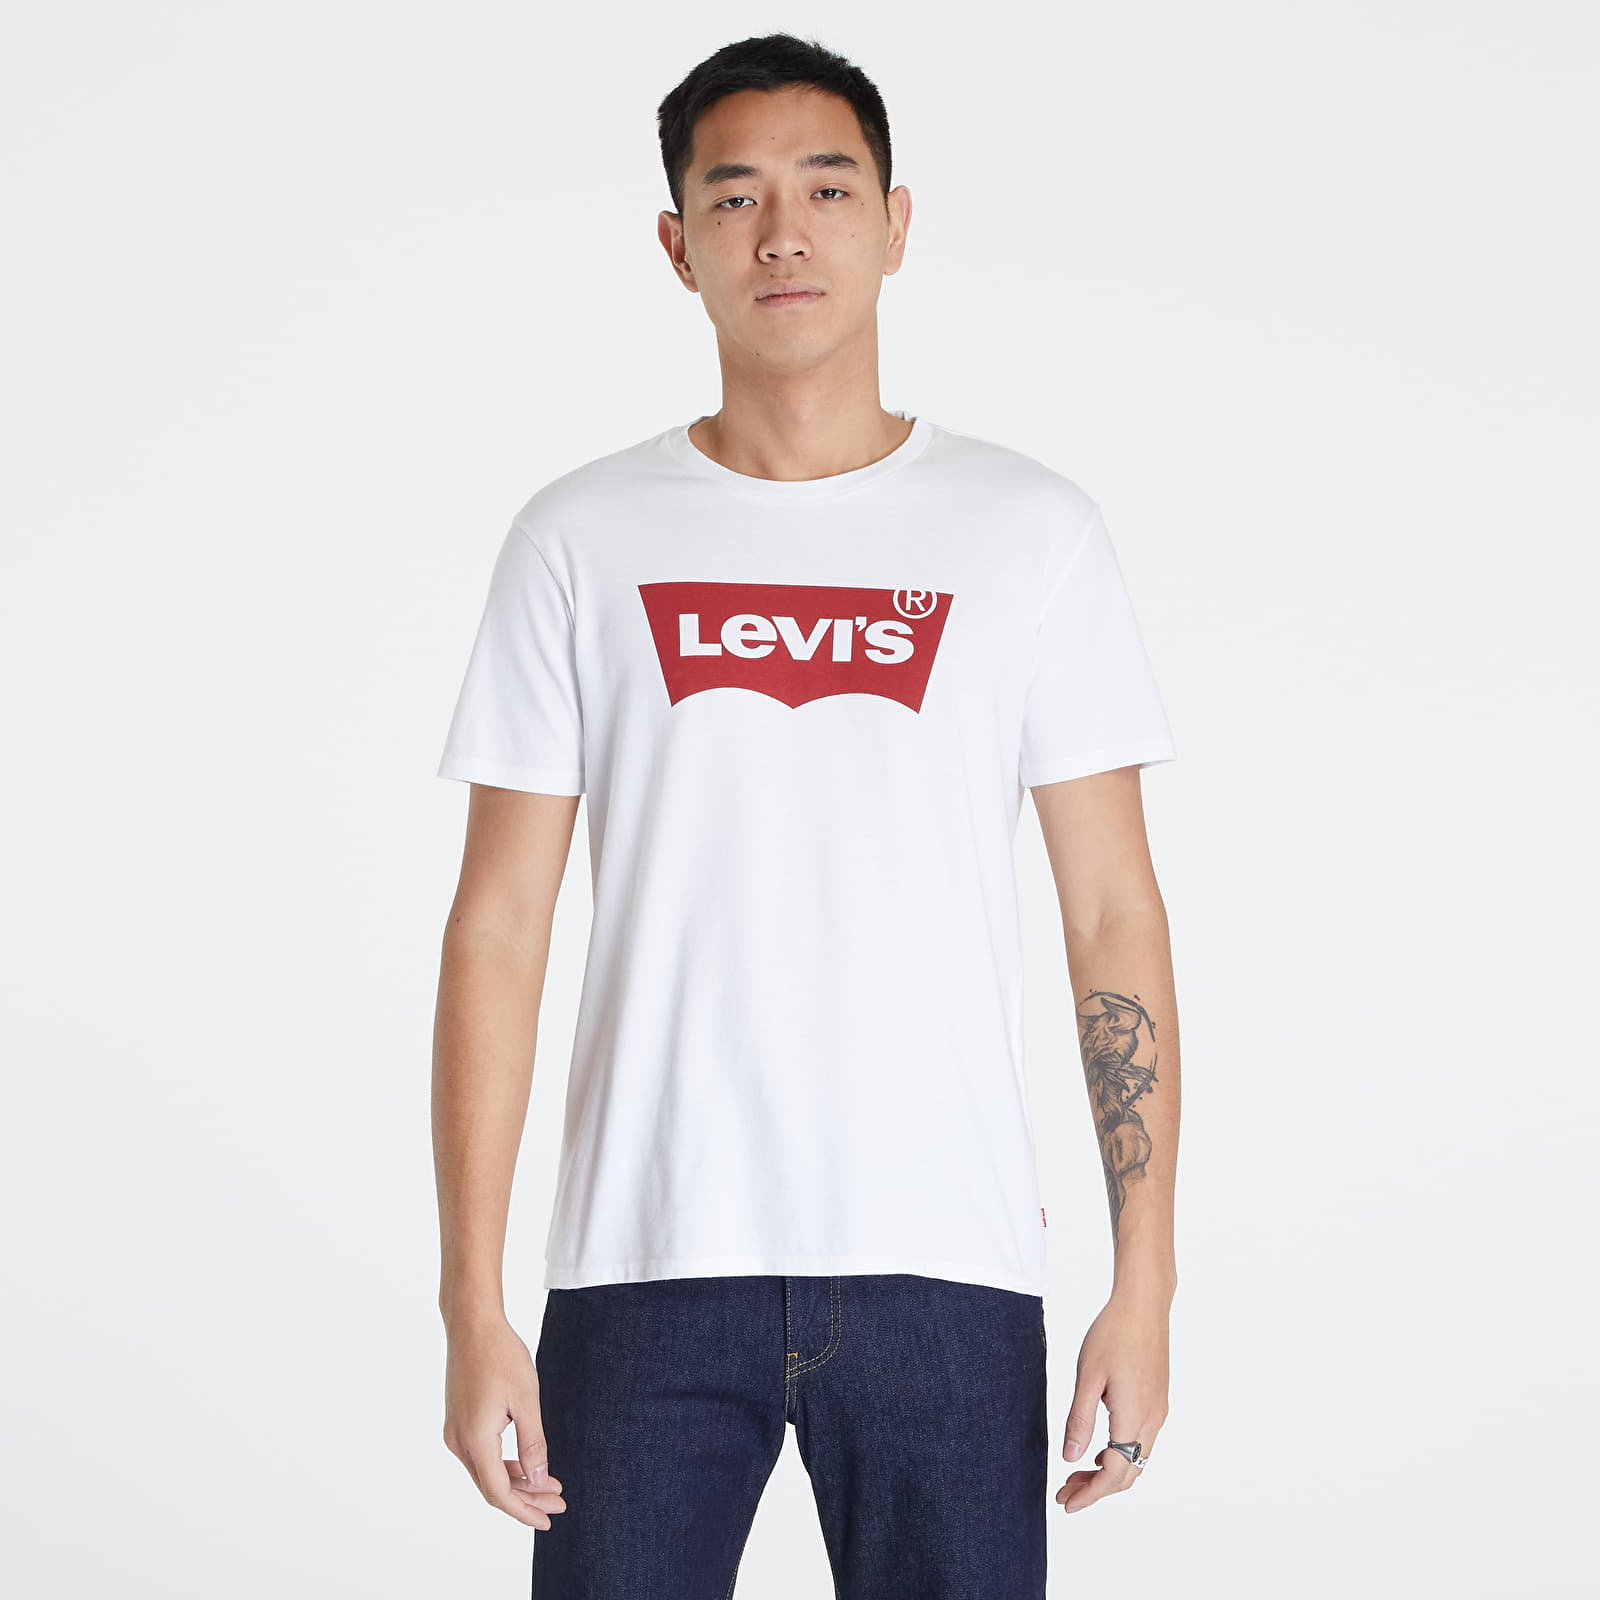  Μπλούζες Levi's® Graphic Satin Neck H215 Tee White